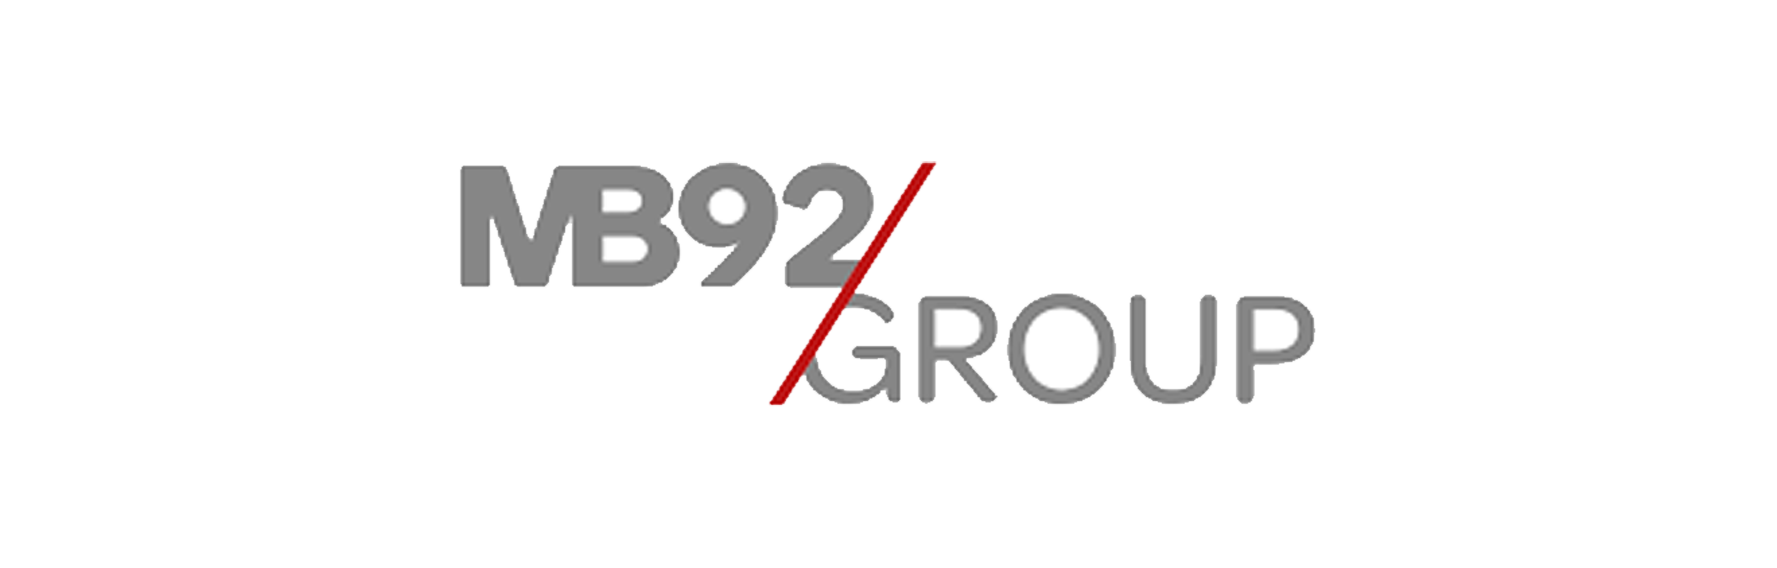 mb92 groupe logo